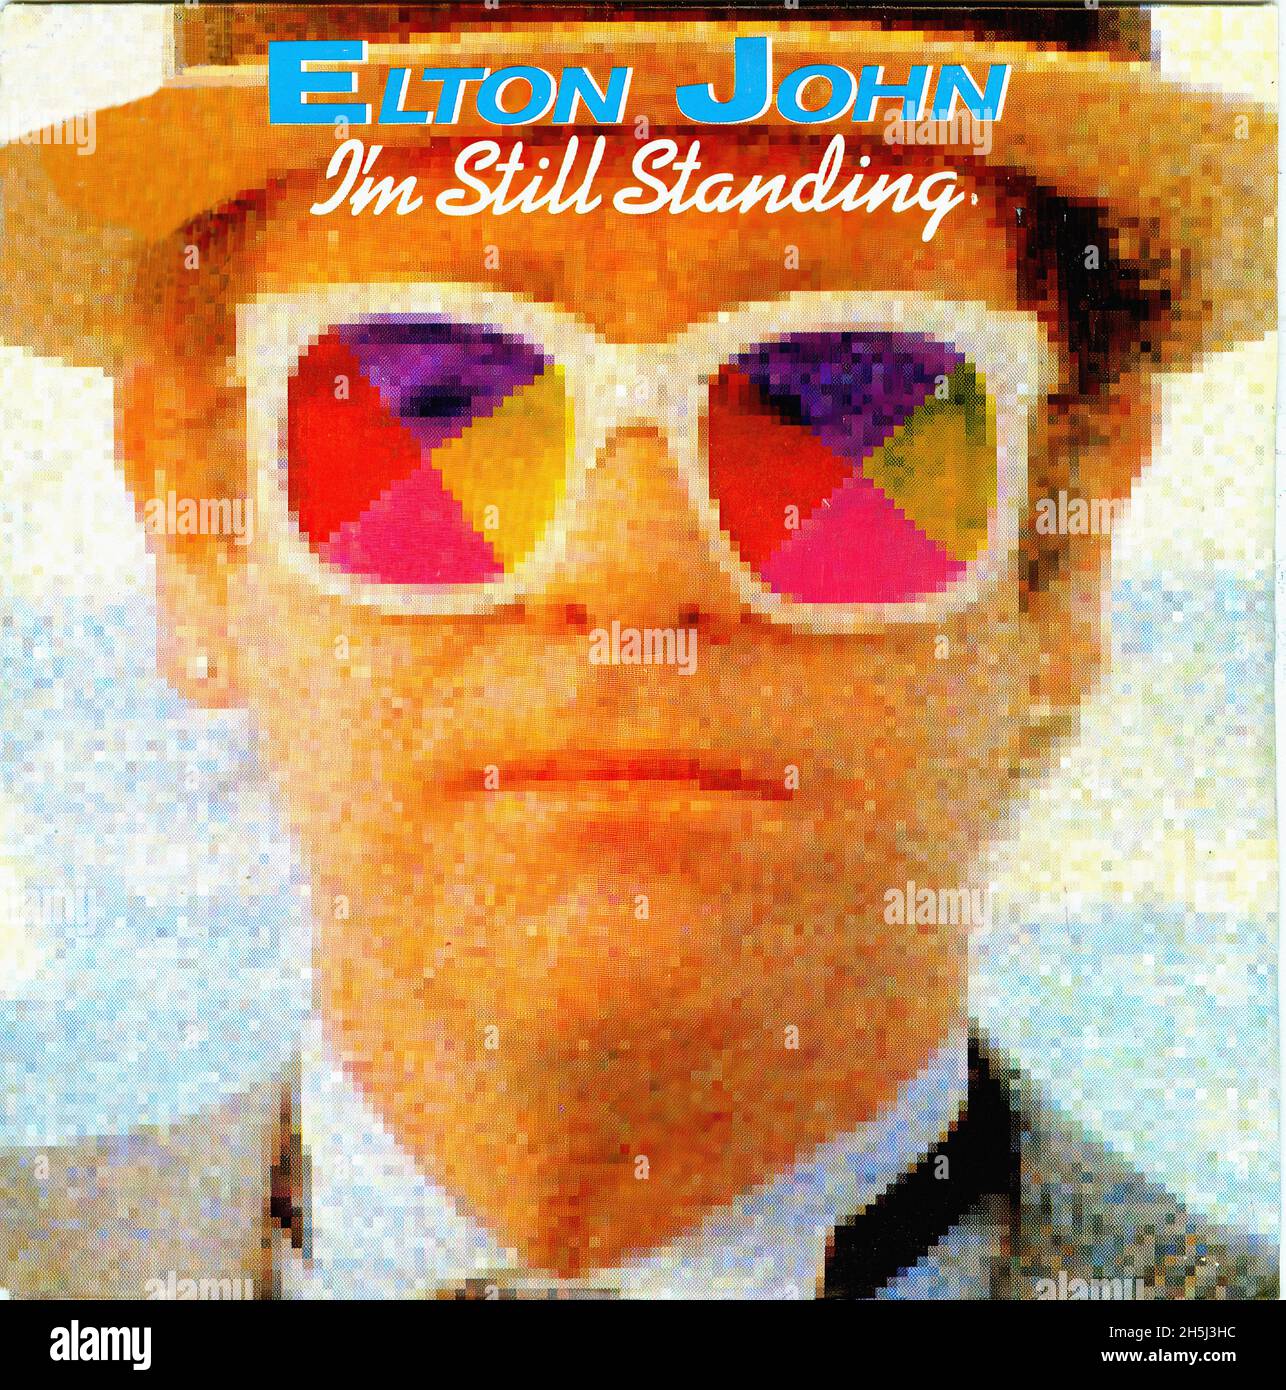 Vintage Single Album Cover - John, Elton - I'm Still Standing - D - 1983  Stockfotografie - Alamy